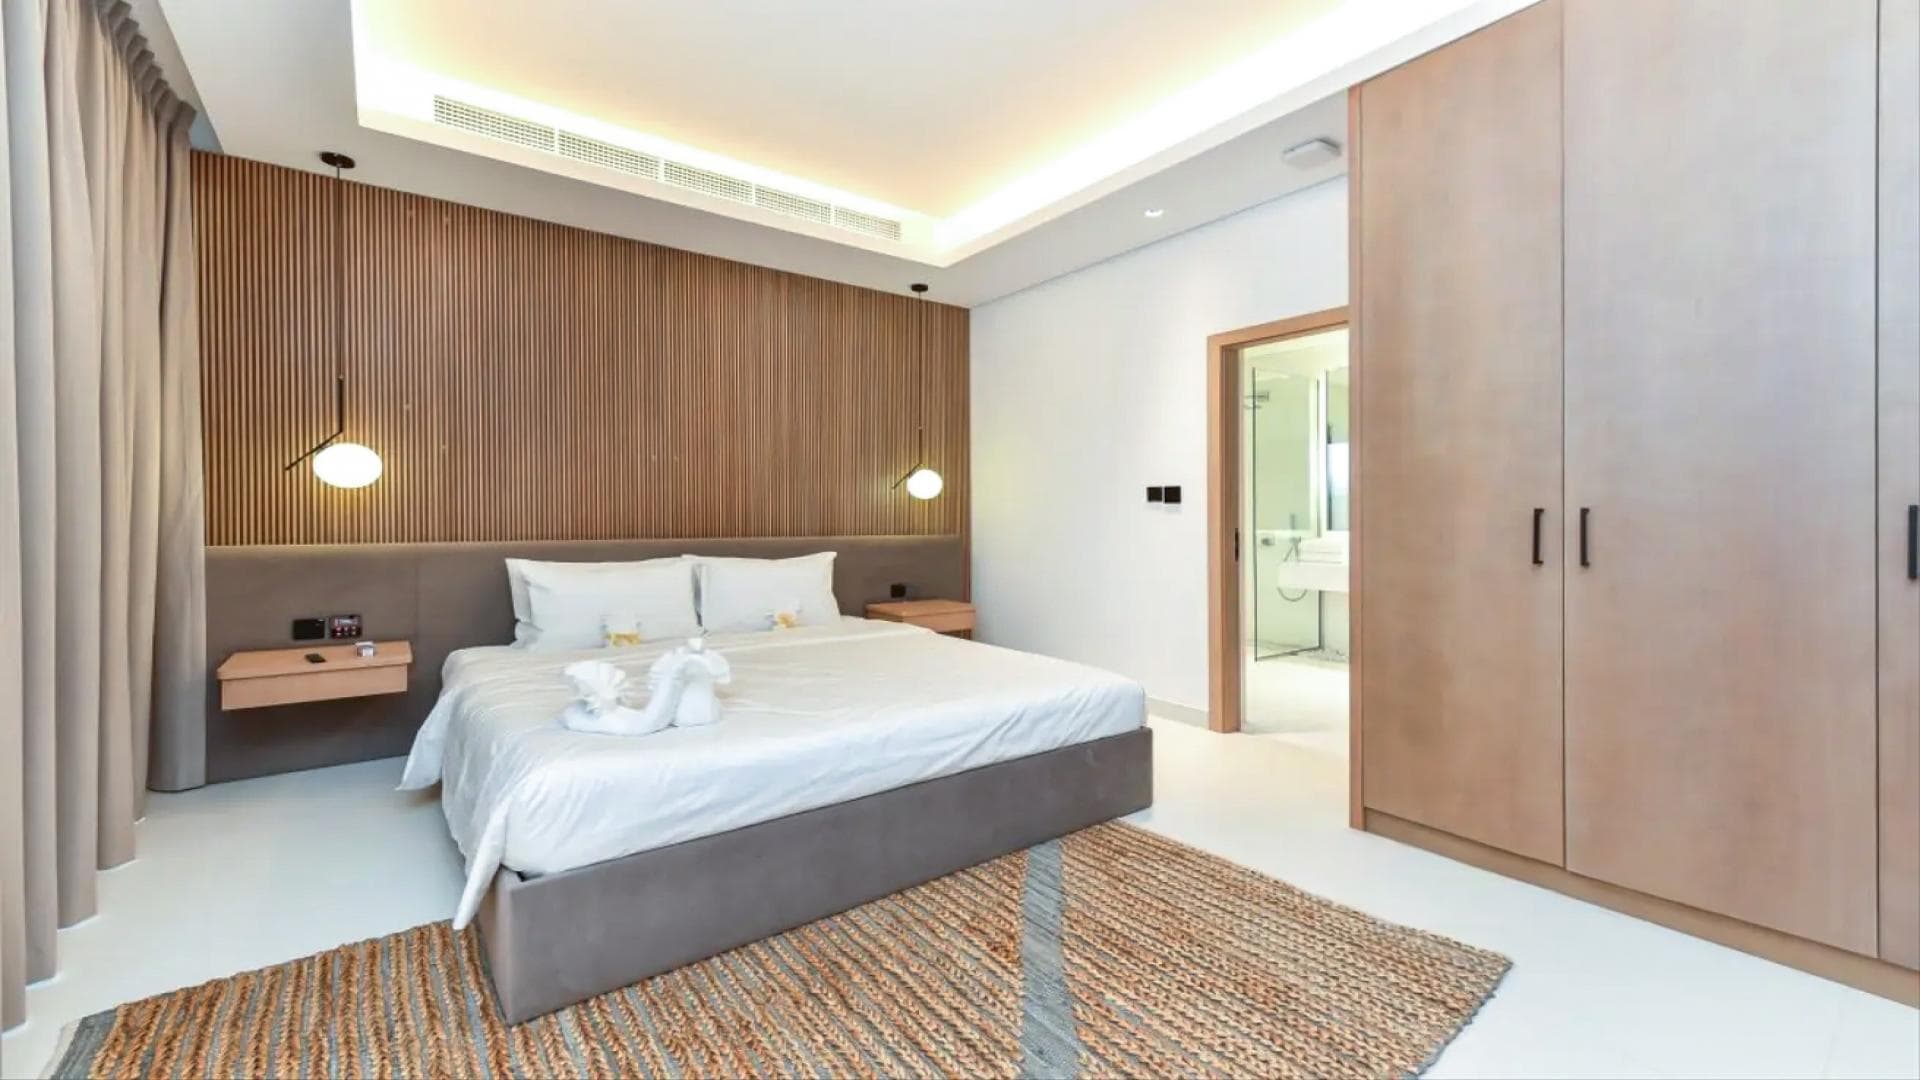 4 Bedroom Villa For Sale Burj Place Tower 1 Lp21226 143edafe5f1c4d0.jpg